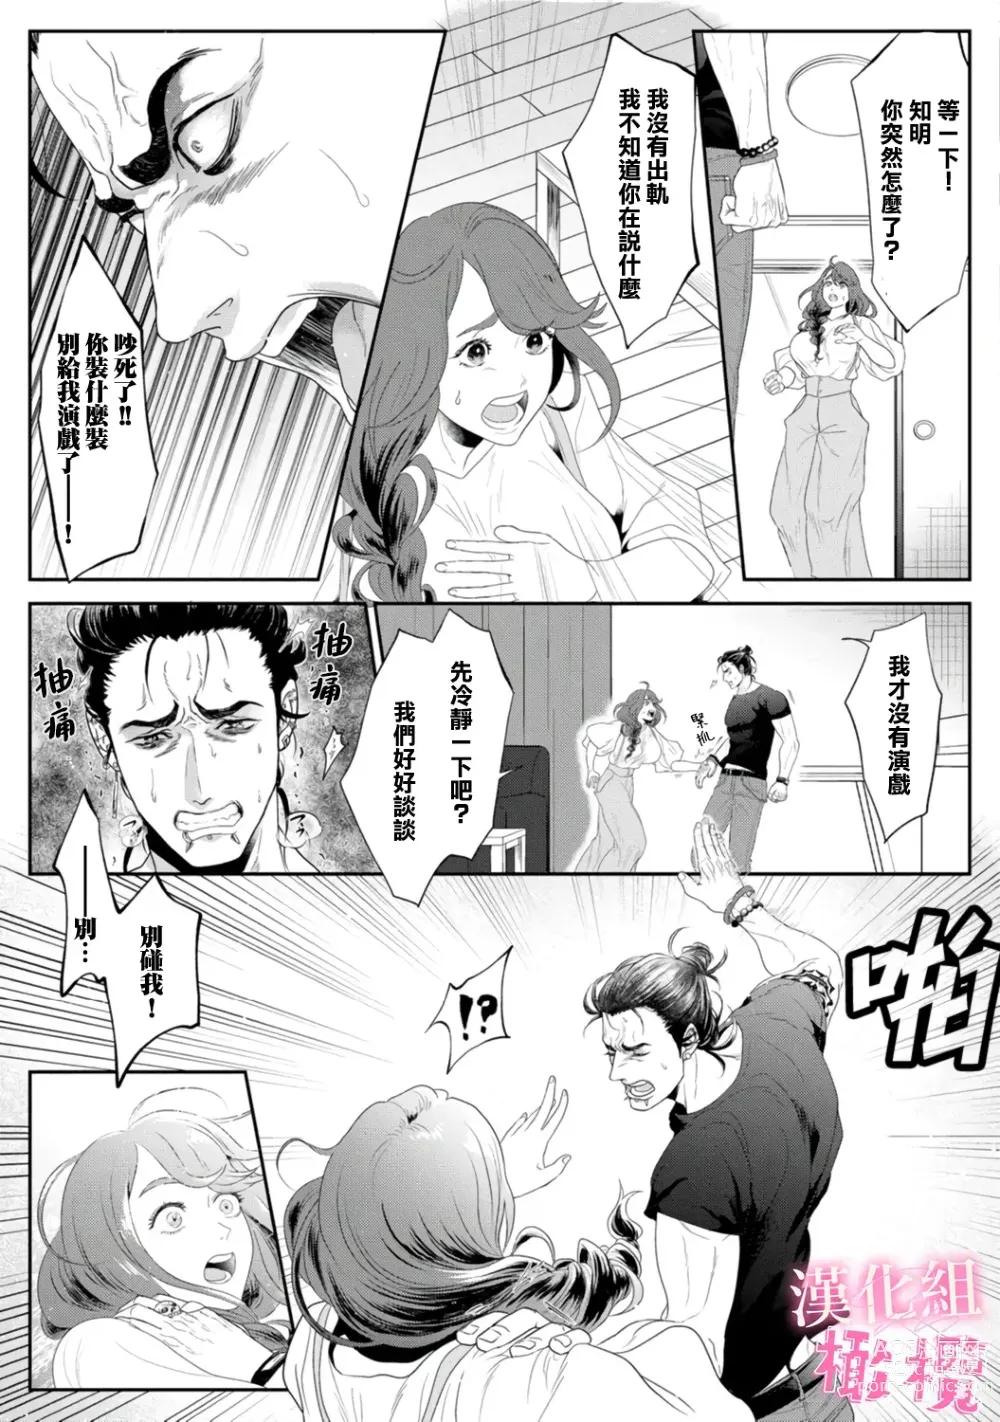 Page 9 of doujinshi Koharu-chan no Tomoaki-kun｜小春的知明